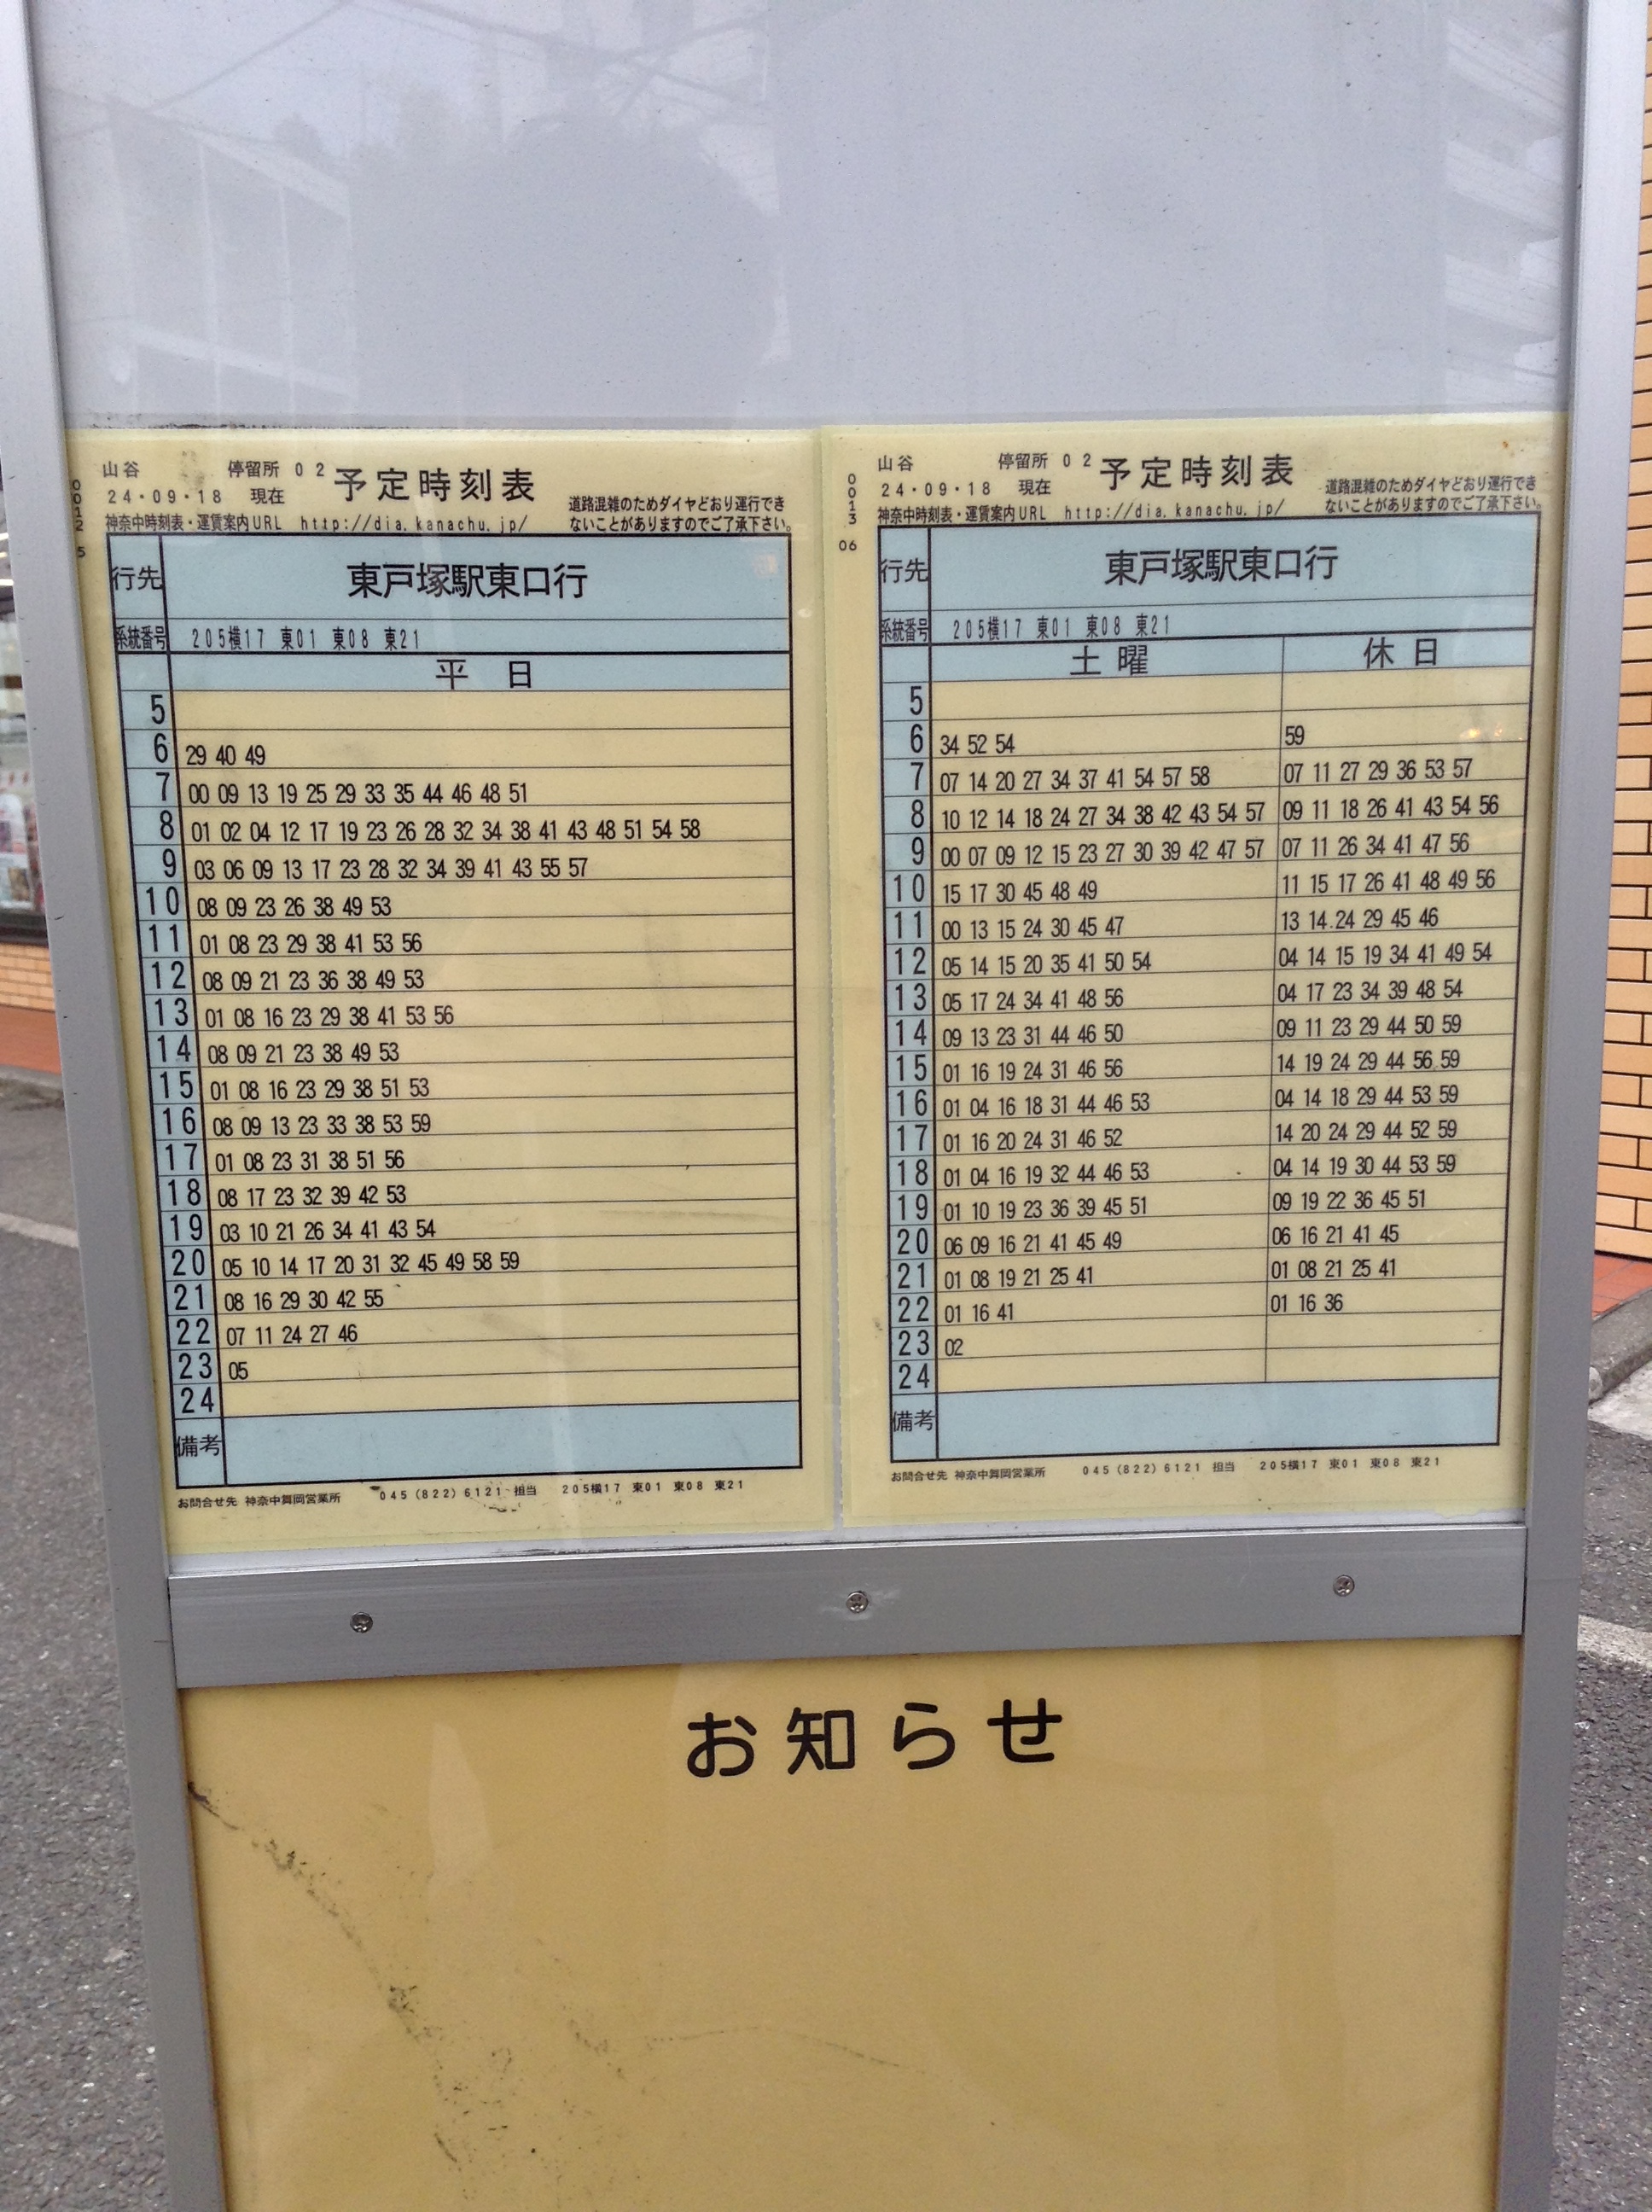 東戸塚駅へのバスの時刻表です 山谷バス停の時刻表 S